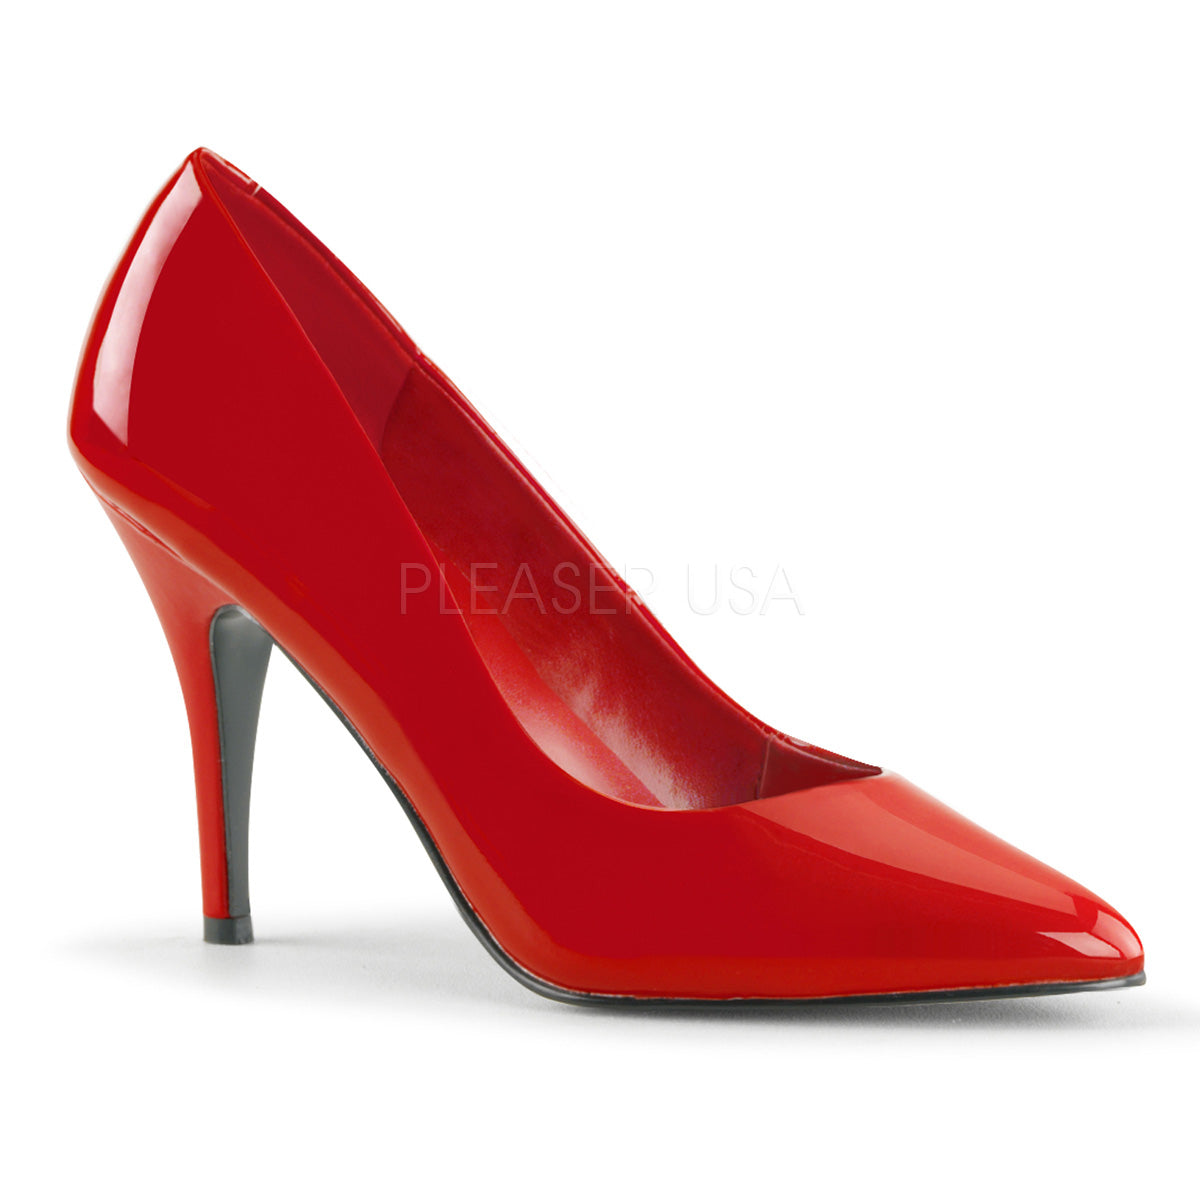 4 Inch Heel VANITY-420 Red Patent